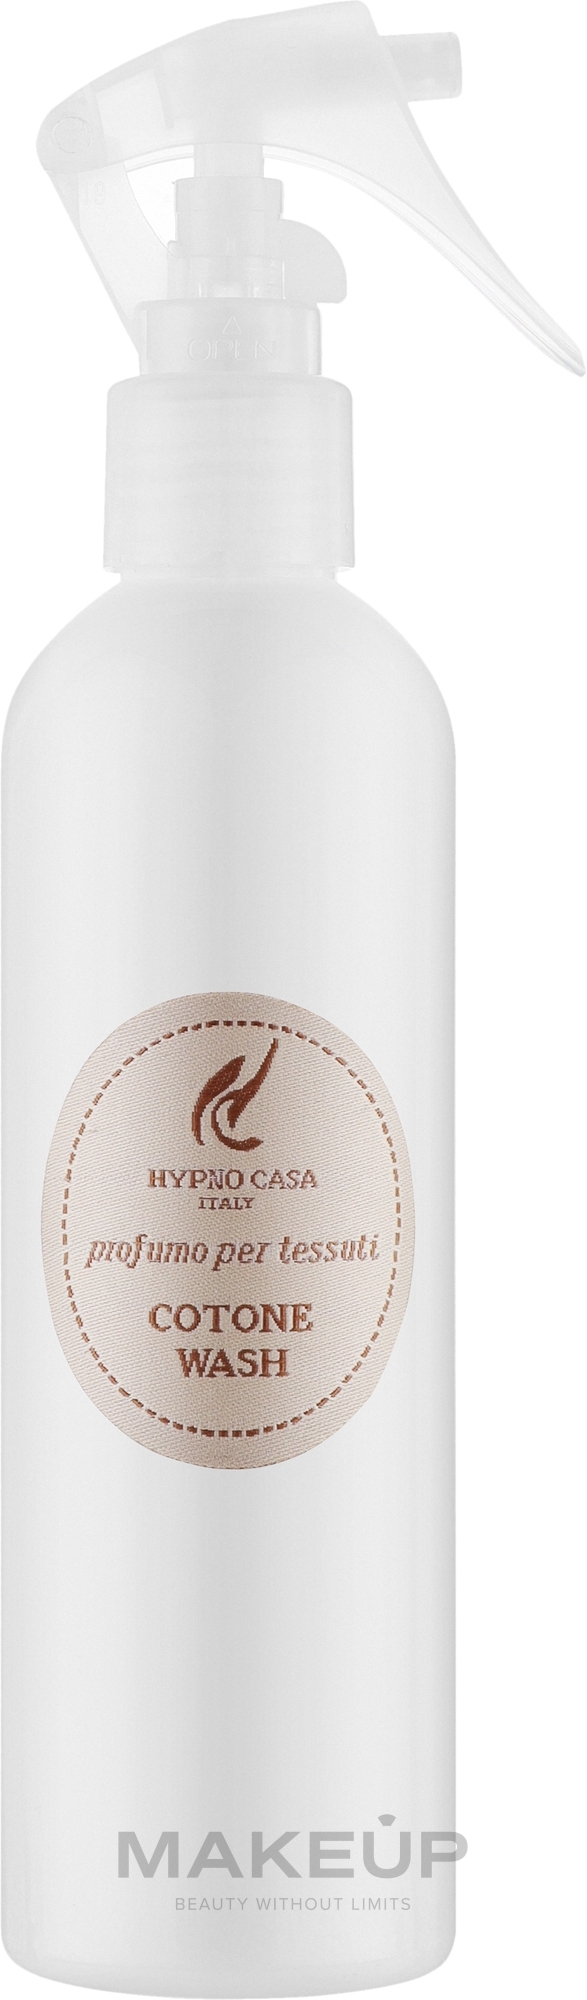 Hypno Casa Cotone Wash - Парфюм для текстиля — фото 250ml